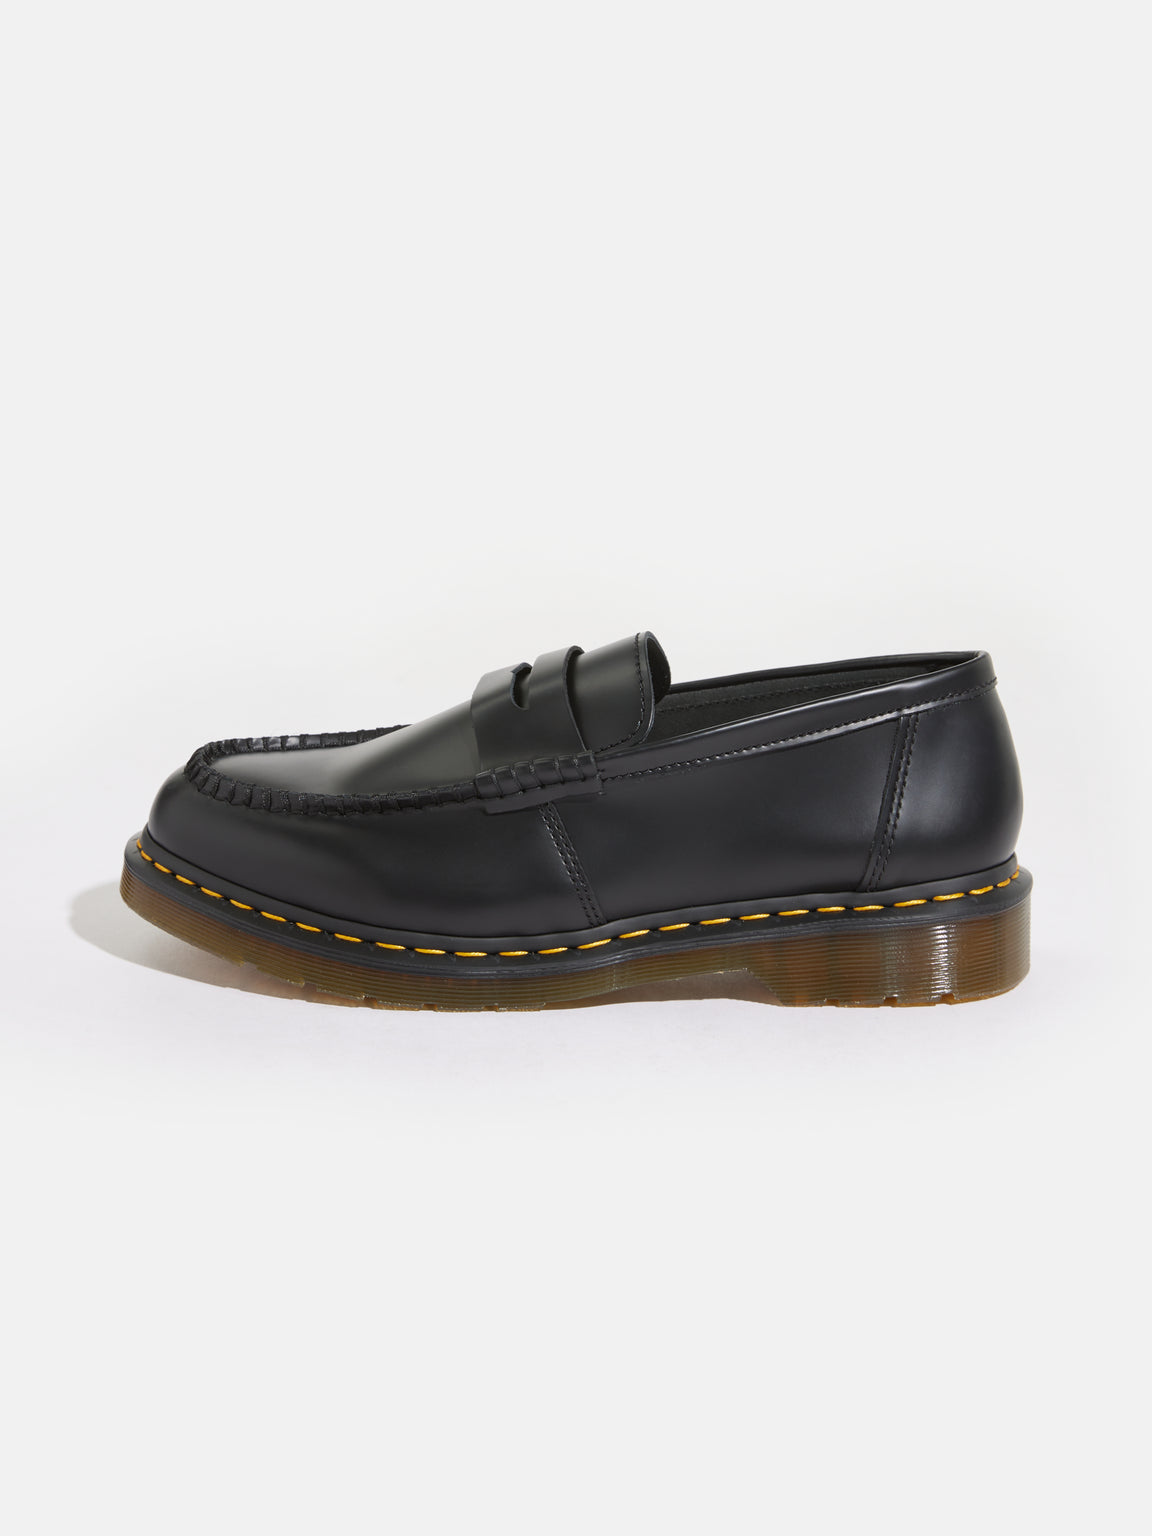 Dr. Martens | Penton Loafers For Men | Bellerose E-shop